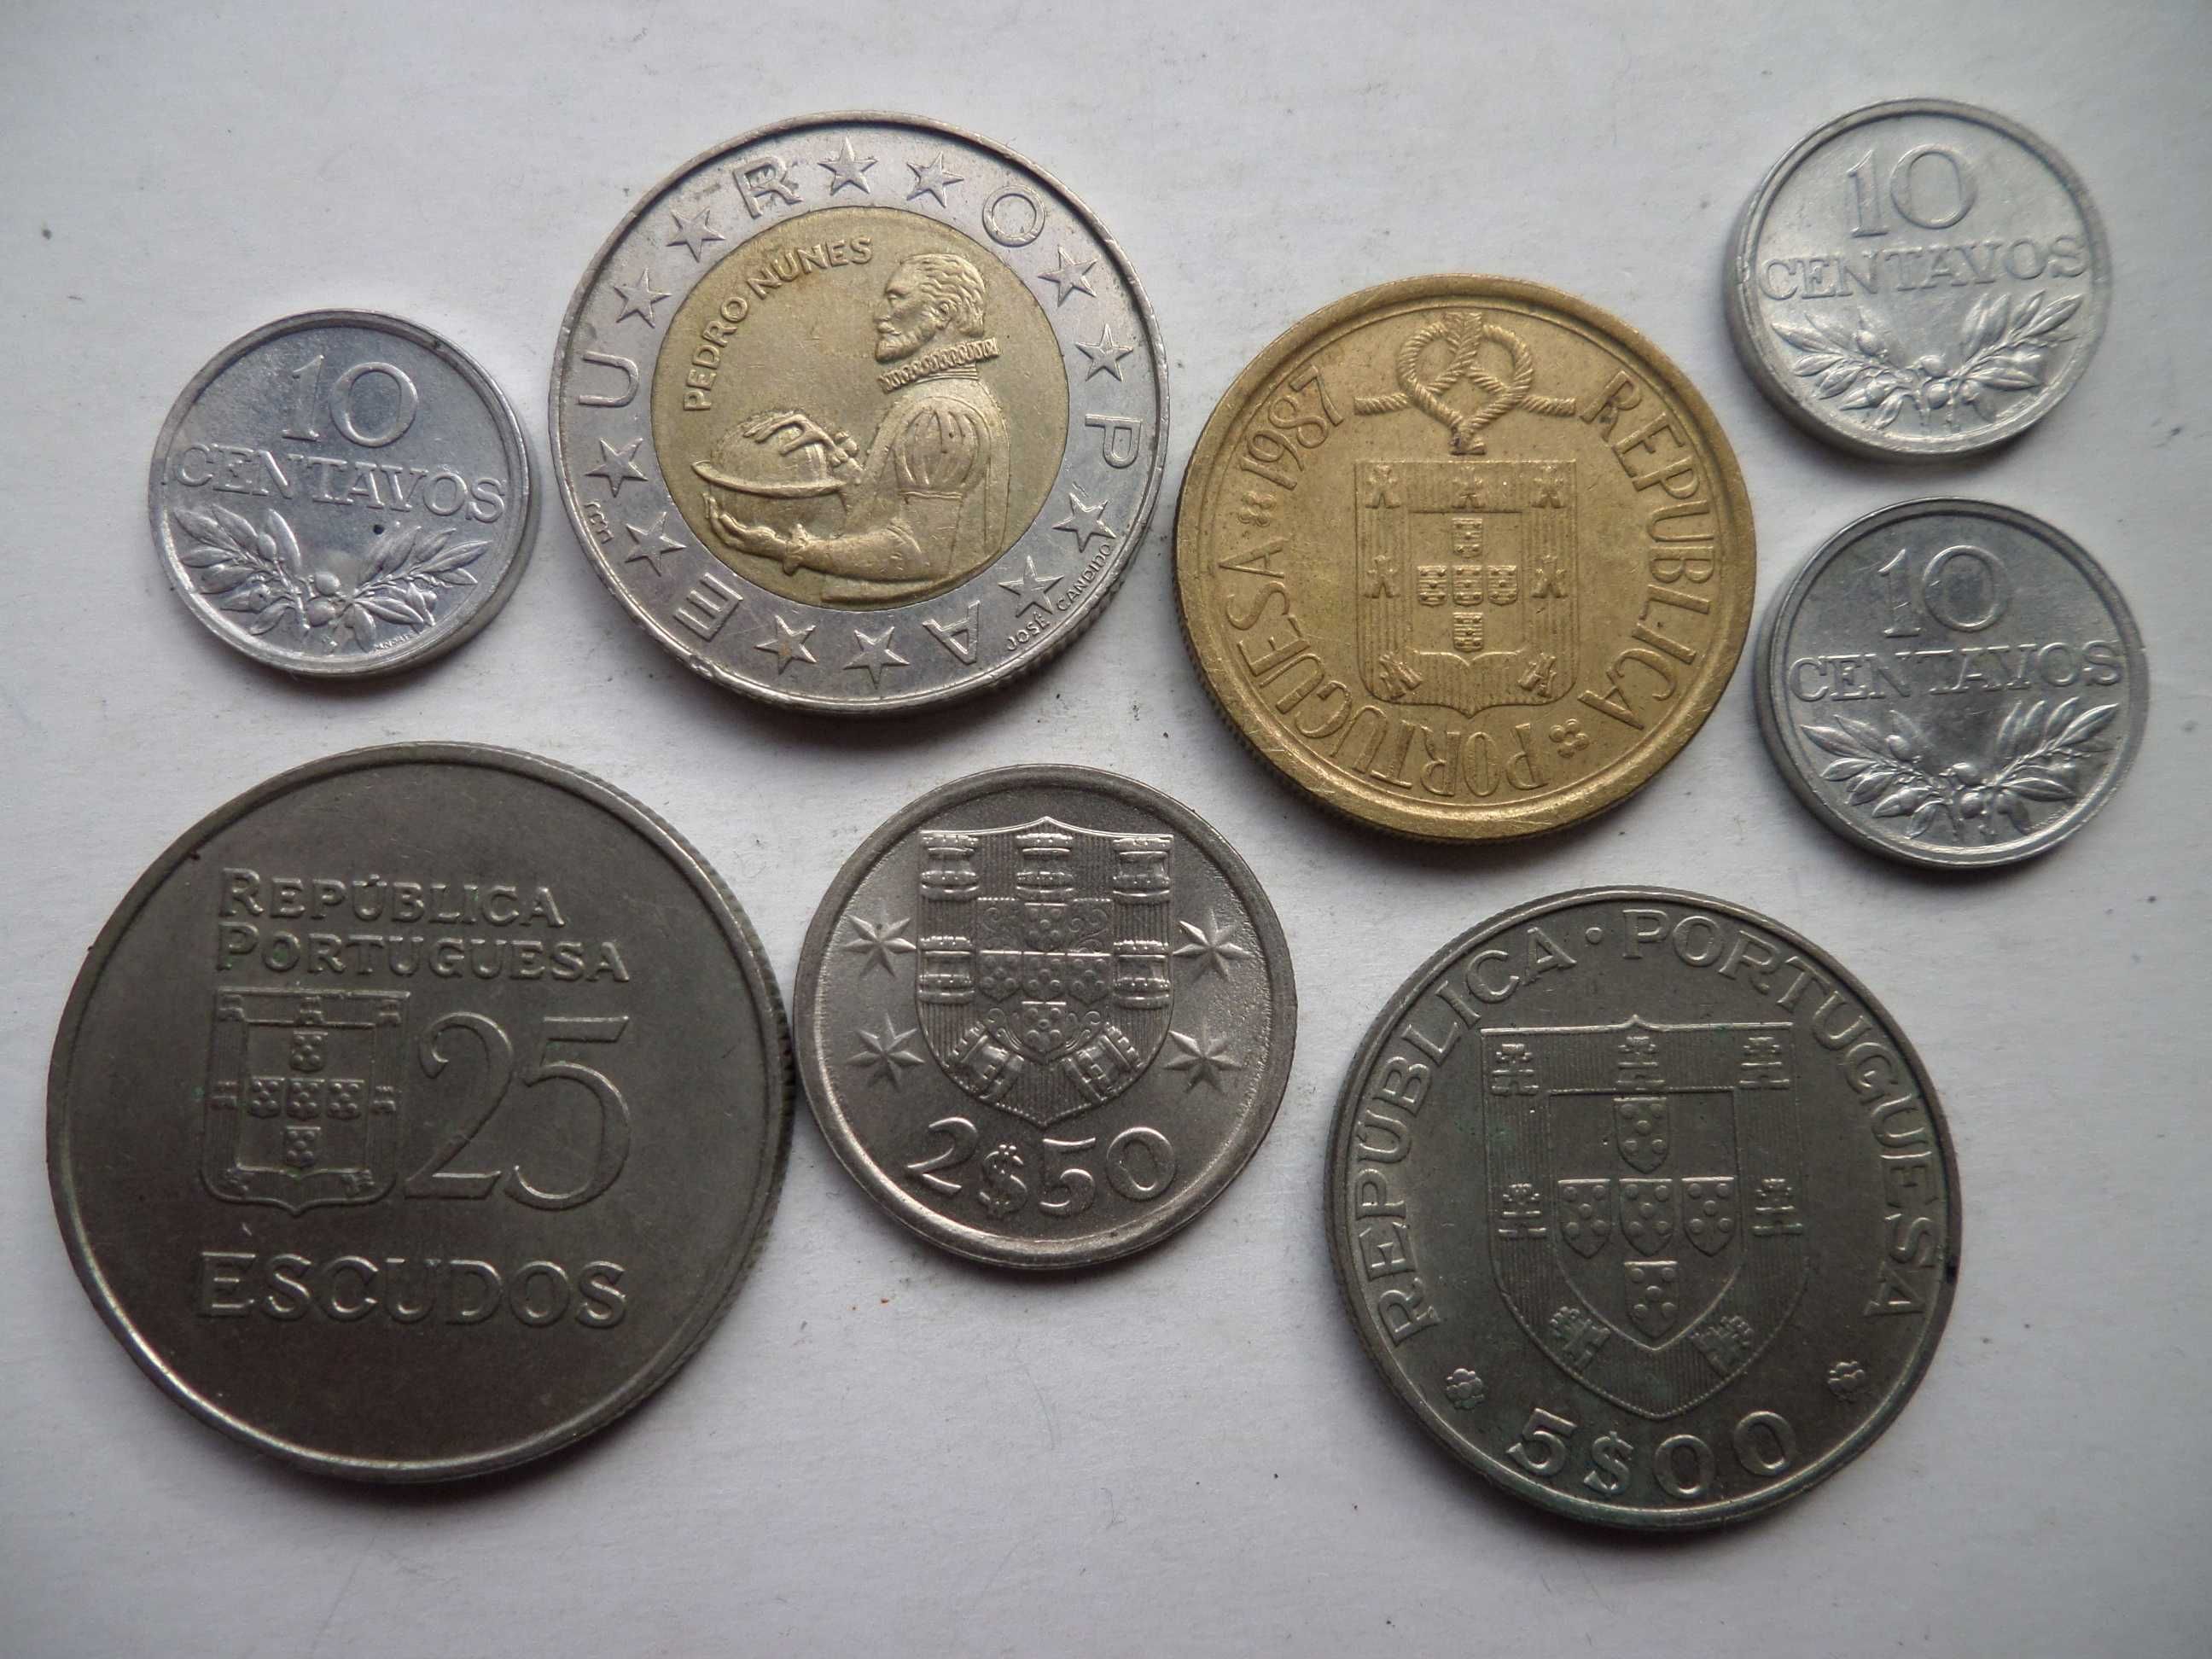 Lote de moedas da Republica Portuguesa: 8 exemplares